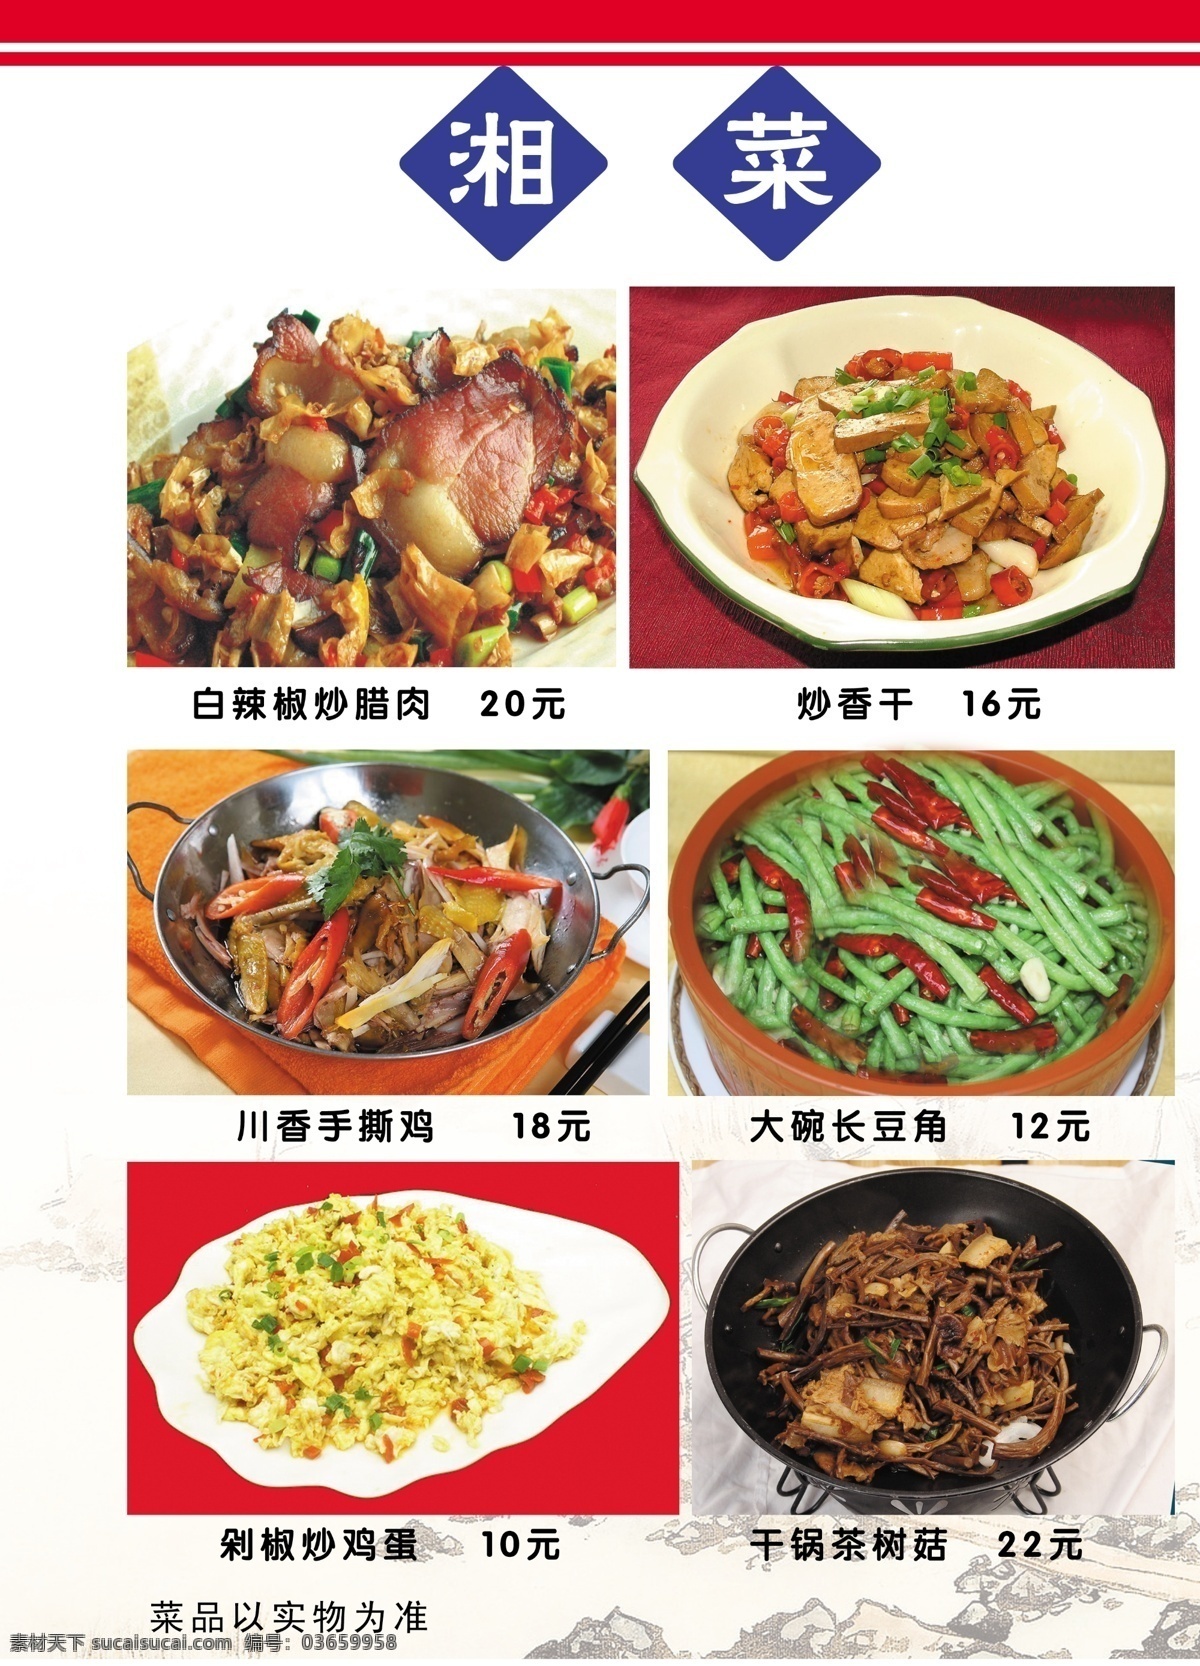 香 村 饭店 菜谱 食品餐饮 菜单菜谱 分层psd 平面广告 海报 设计素材 平面模板 psd源文件 白色